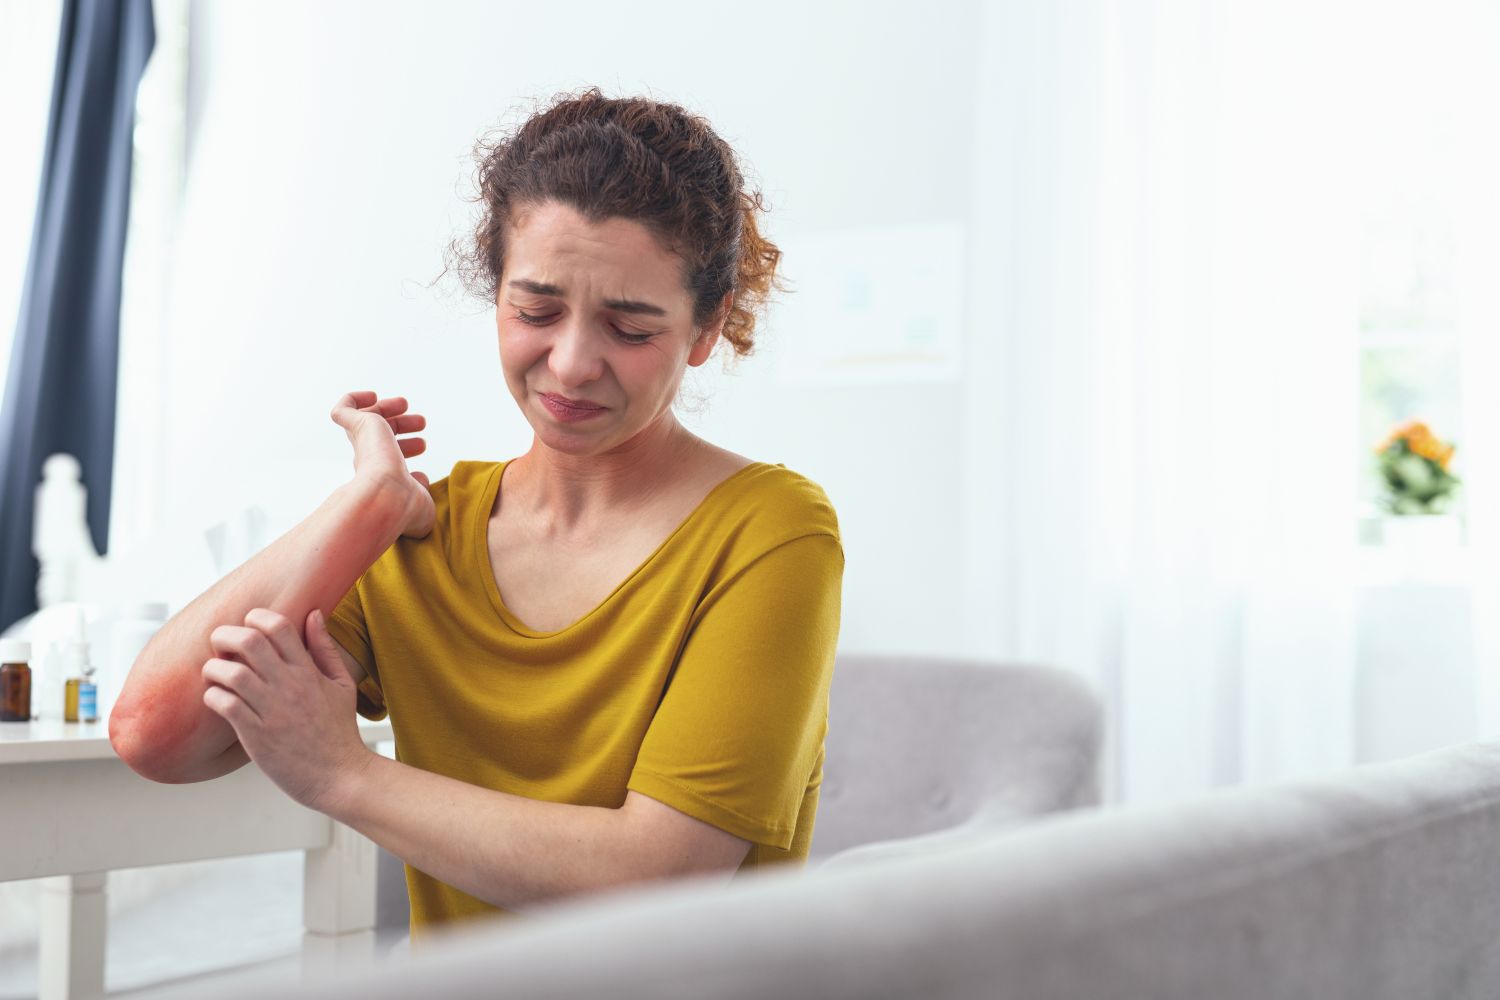 Frau mit Neurodermitis kratzt sich am geröteten Arm. Thema: Neurodermitis-Behandlung